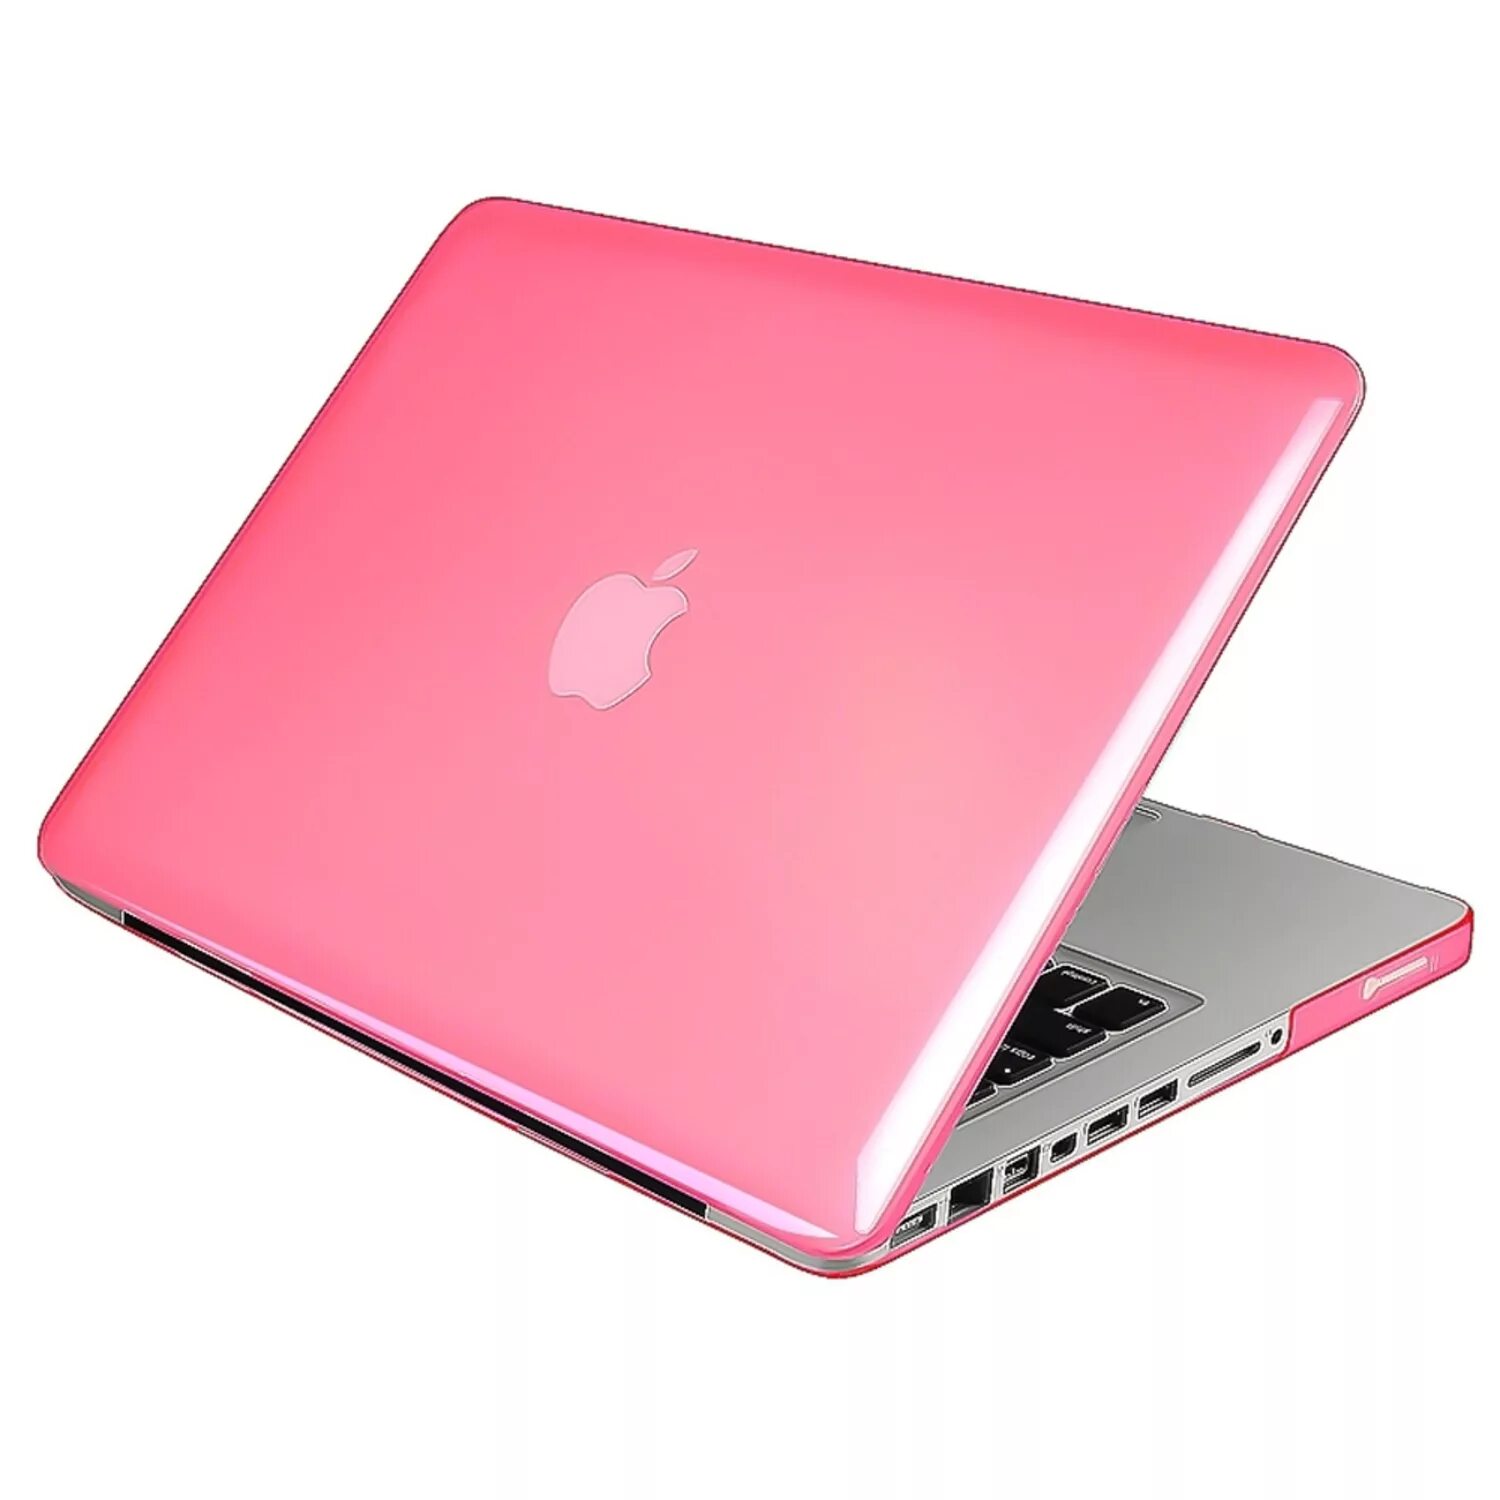 Пинк макбук. Ноутбук розовый. Ноутбук Apple розовый. Ноутбук розовый с яблочком. Розовый ноутбук купить